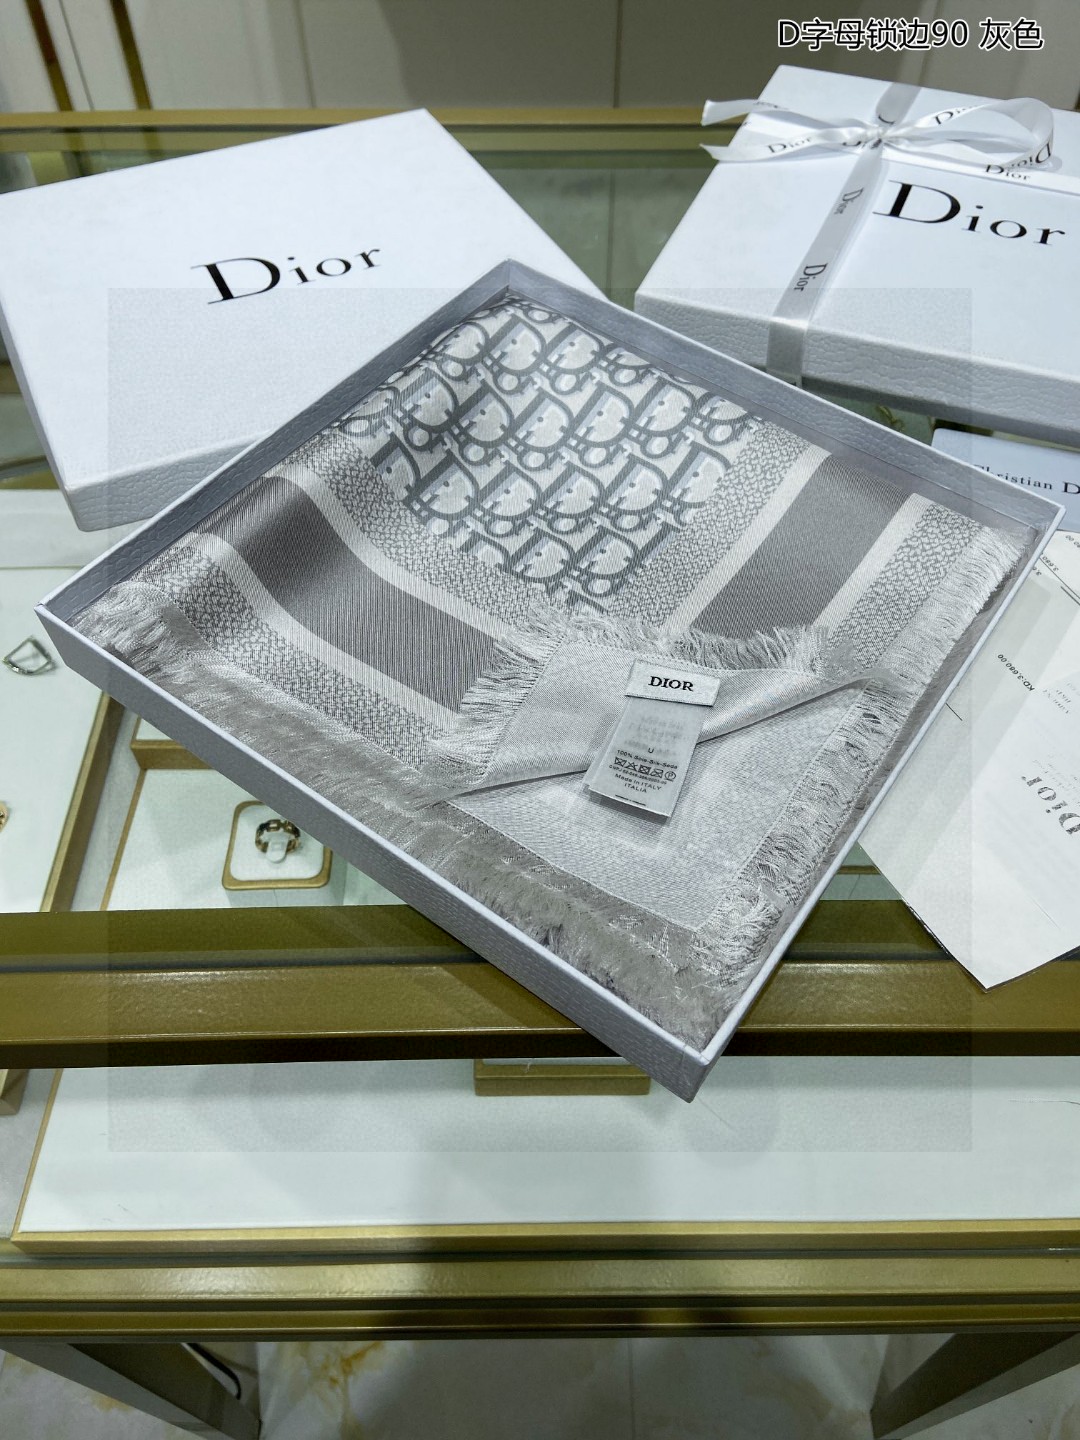 爆款真丝来啦Dior最最新的专柜主打款D字母锁边90真丝方巾度假及日常都非常好搭配的款订单私流一看到就想